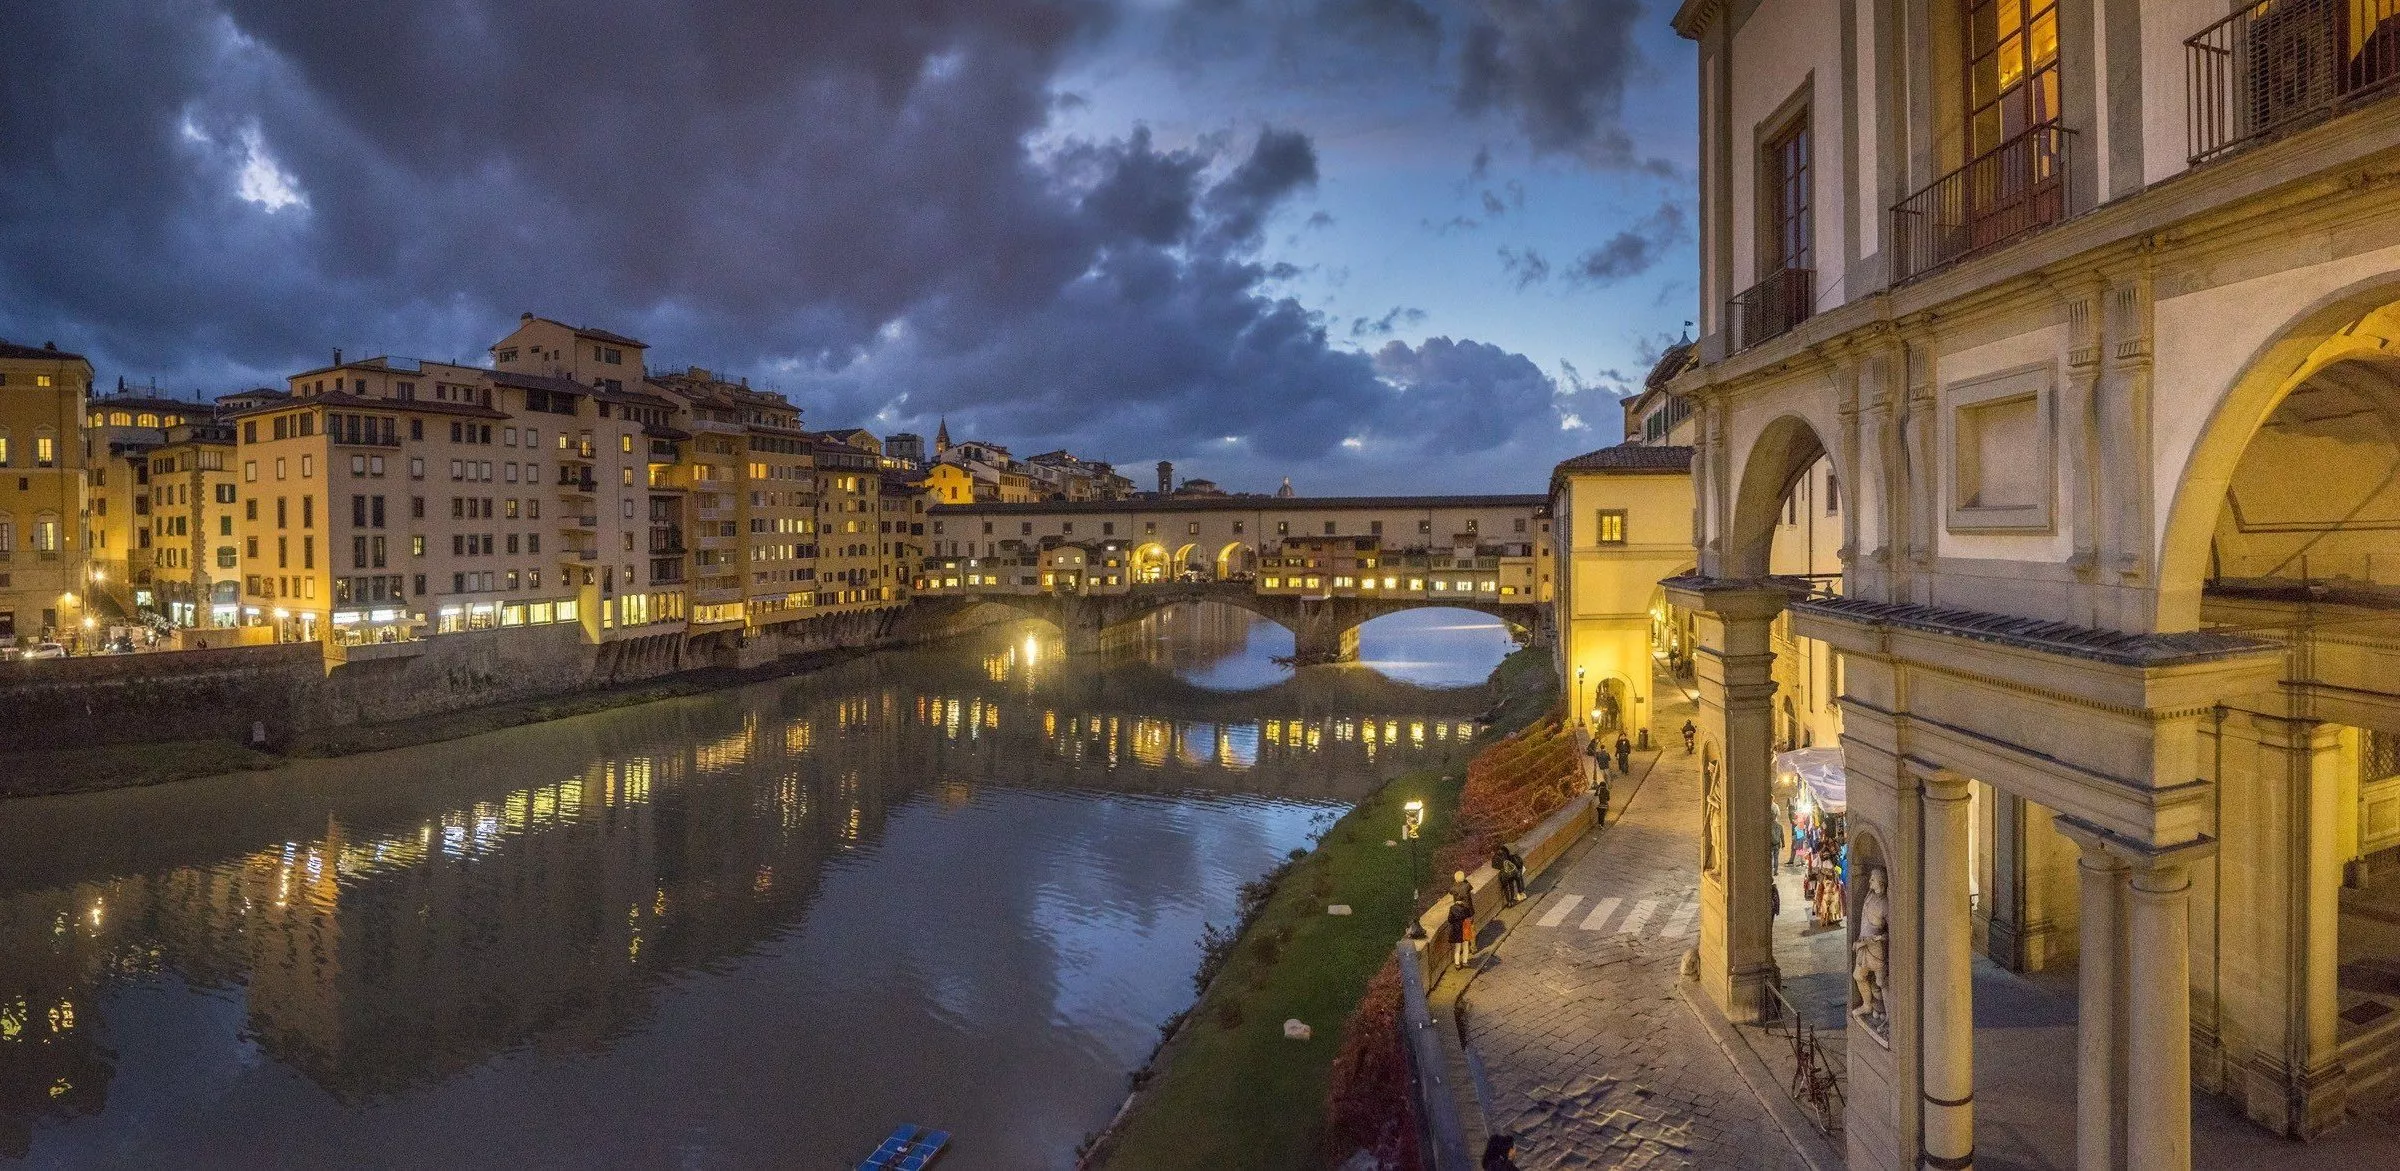 Der Ponte Vecchio ist die älteste Brücke über den Arno der italienischen Stadt Florenz